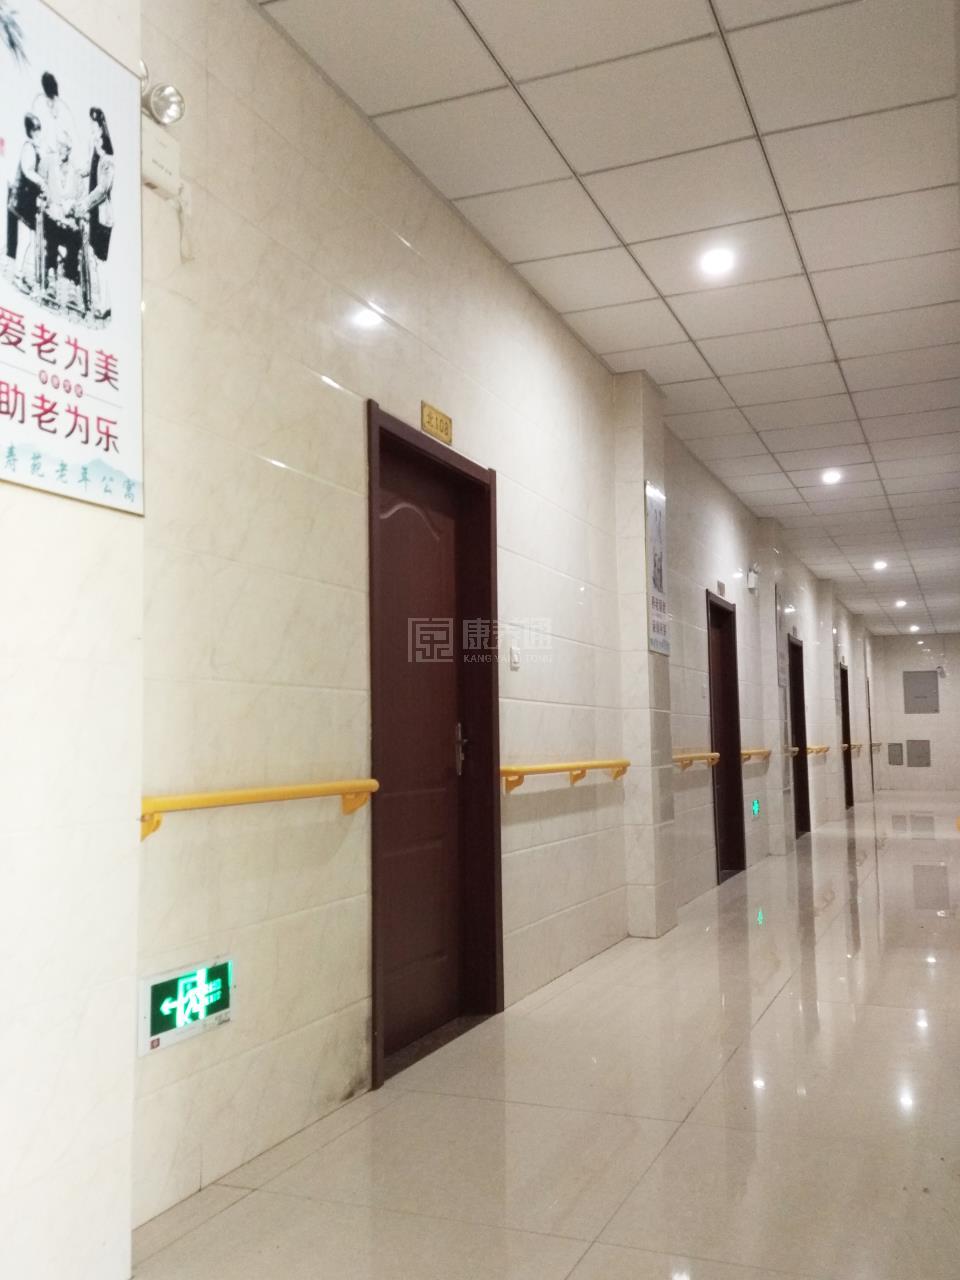 怀远县颐寿苑老年公寓环境图-洗手间